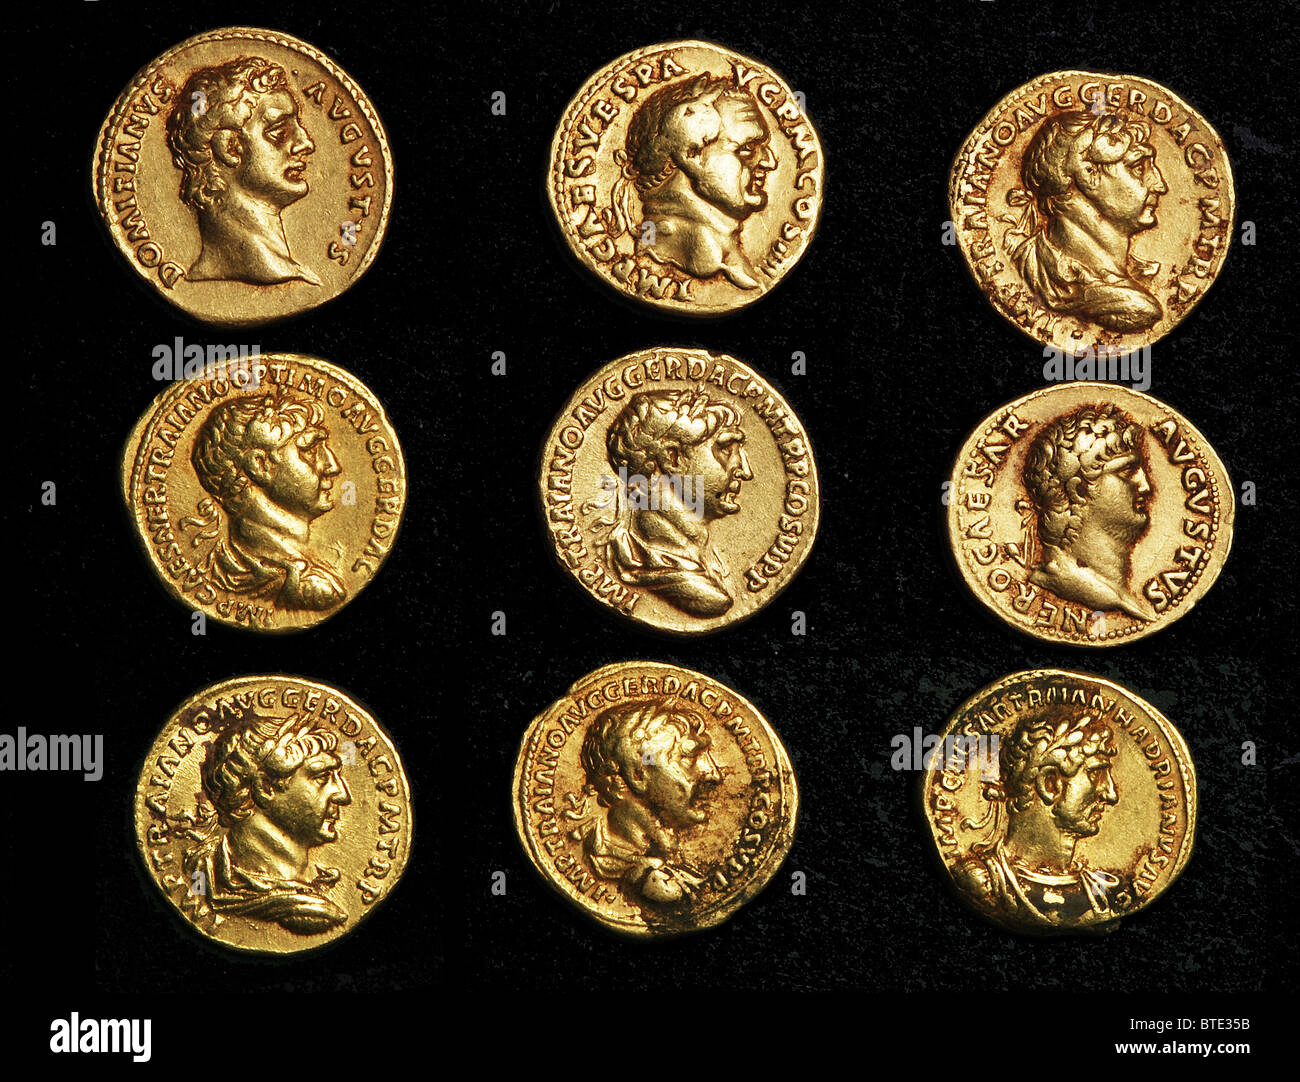 5473. Monedas de oro romano Imperial teniendo bustos de los Emperadores varrious. Foto de stock